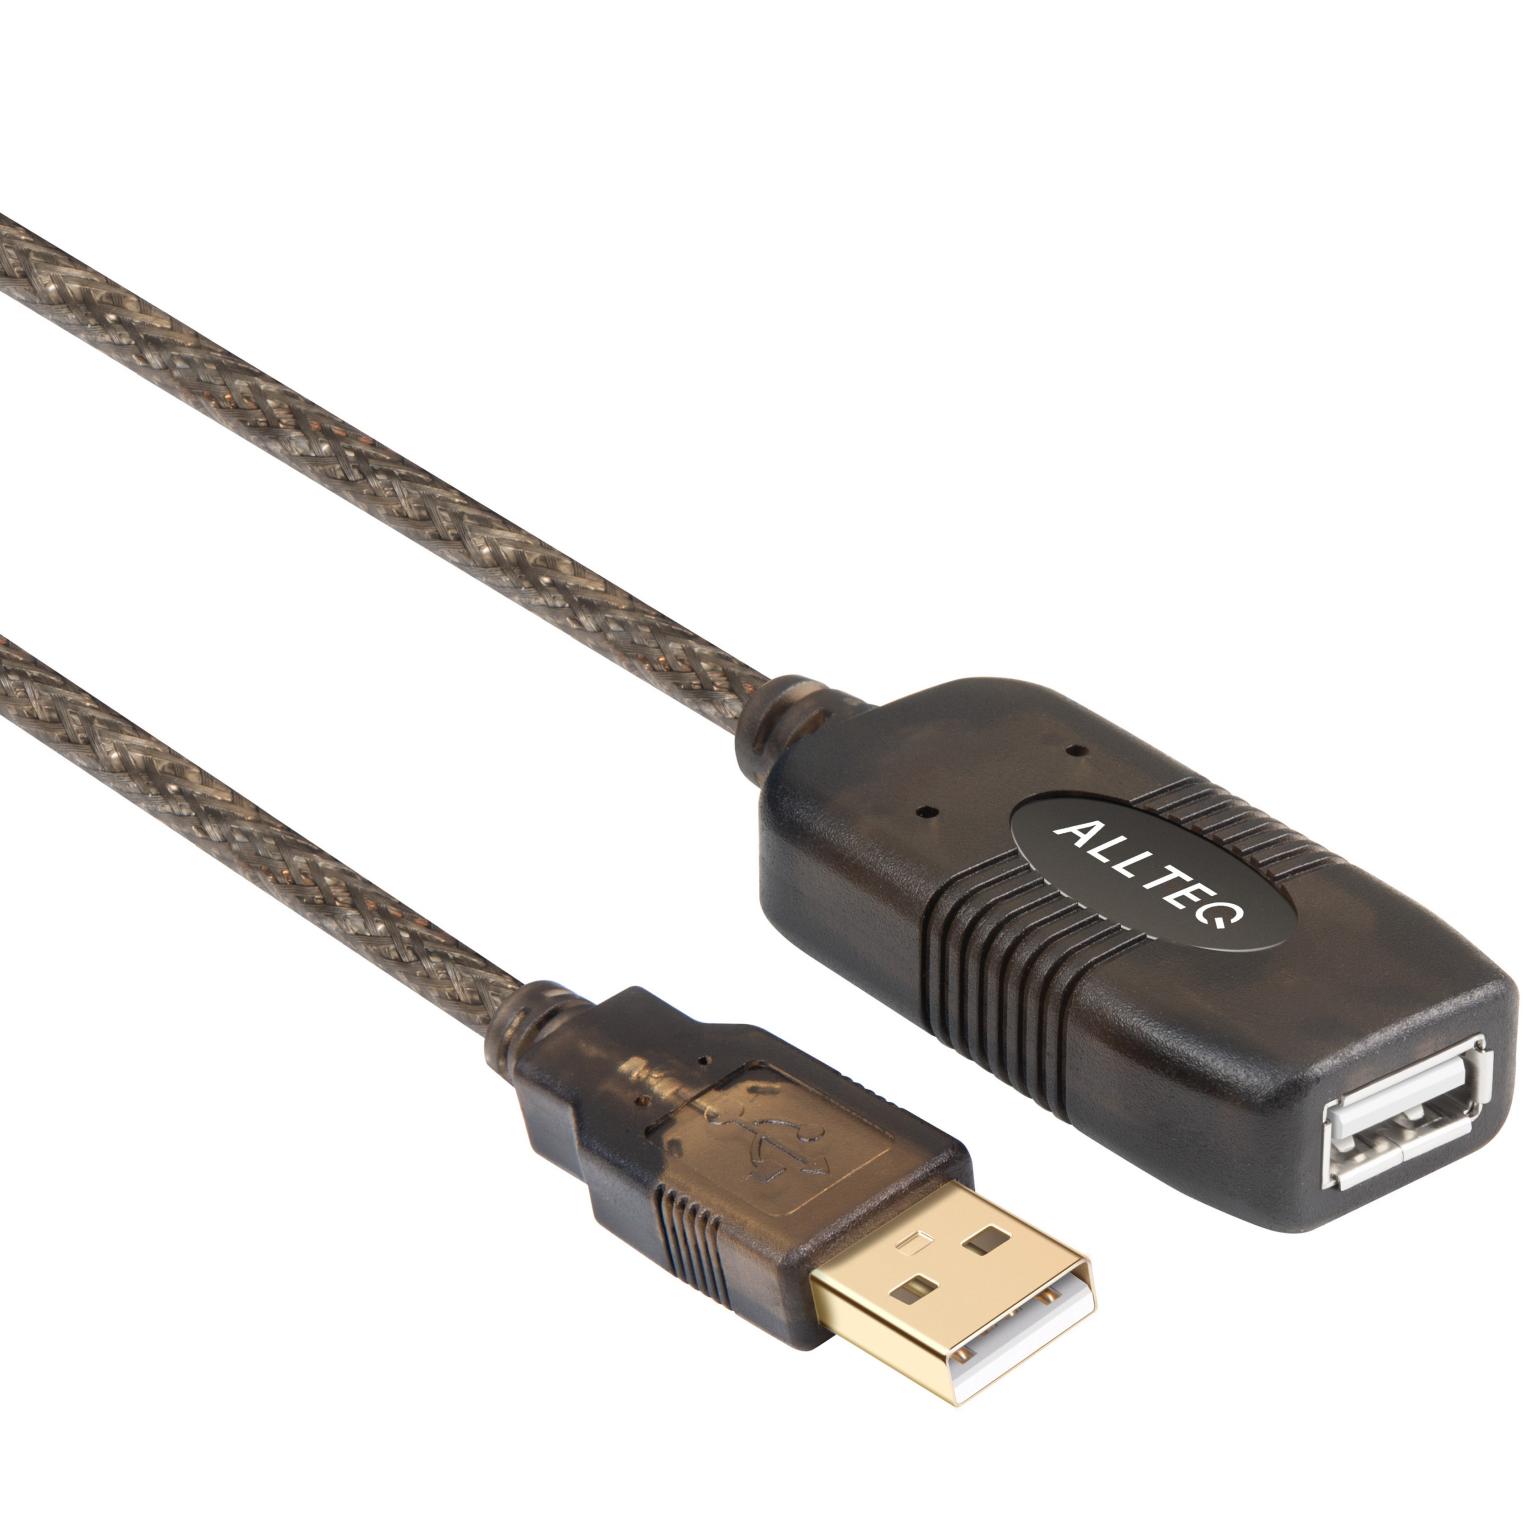 USB 2.0-Winkelverlängerung 0,5m, zur Verringerung der Einbautiefe